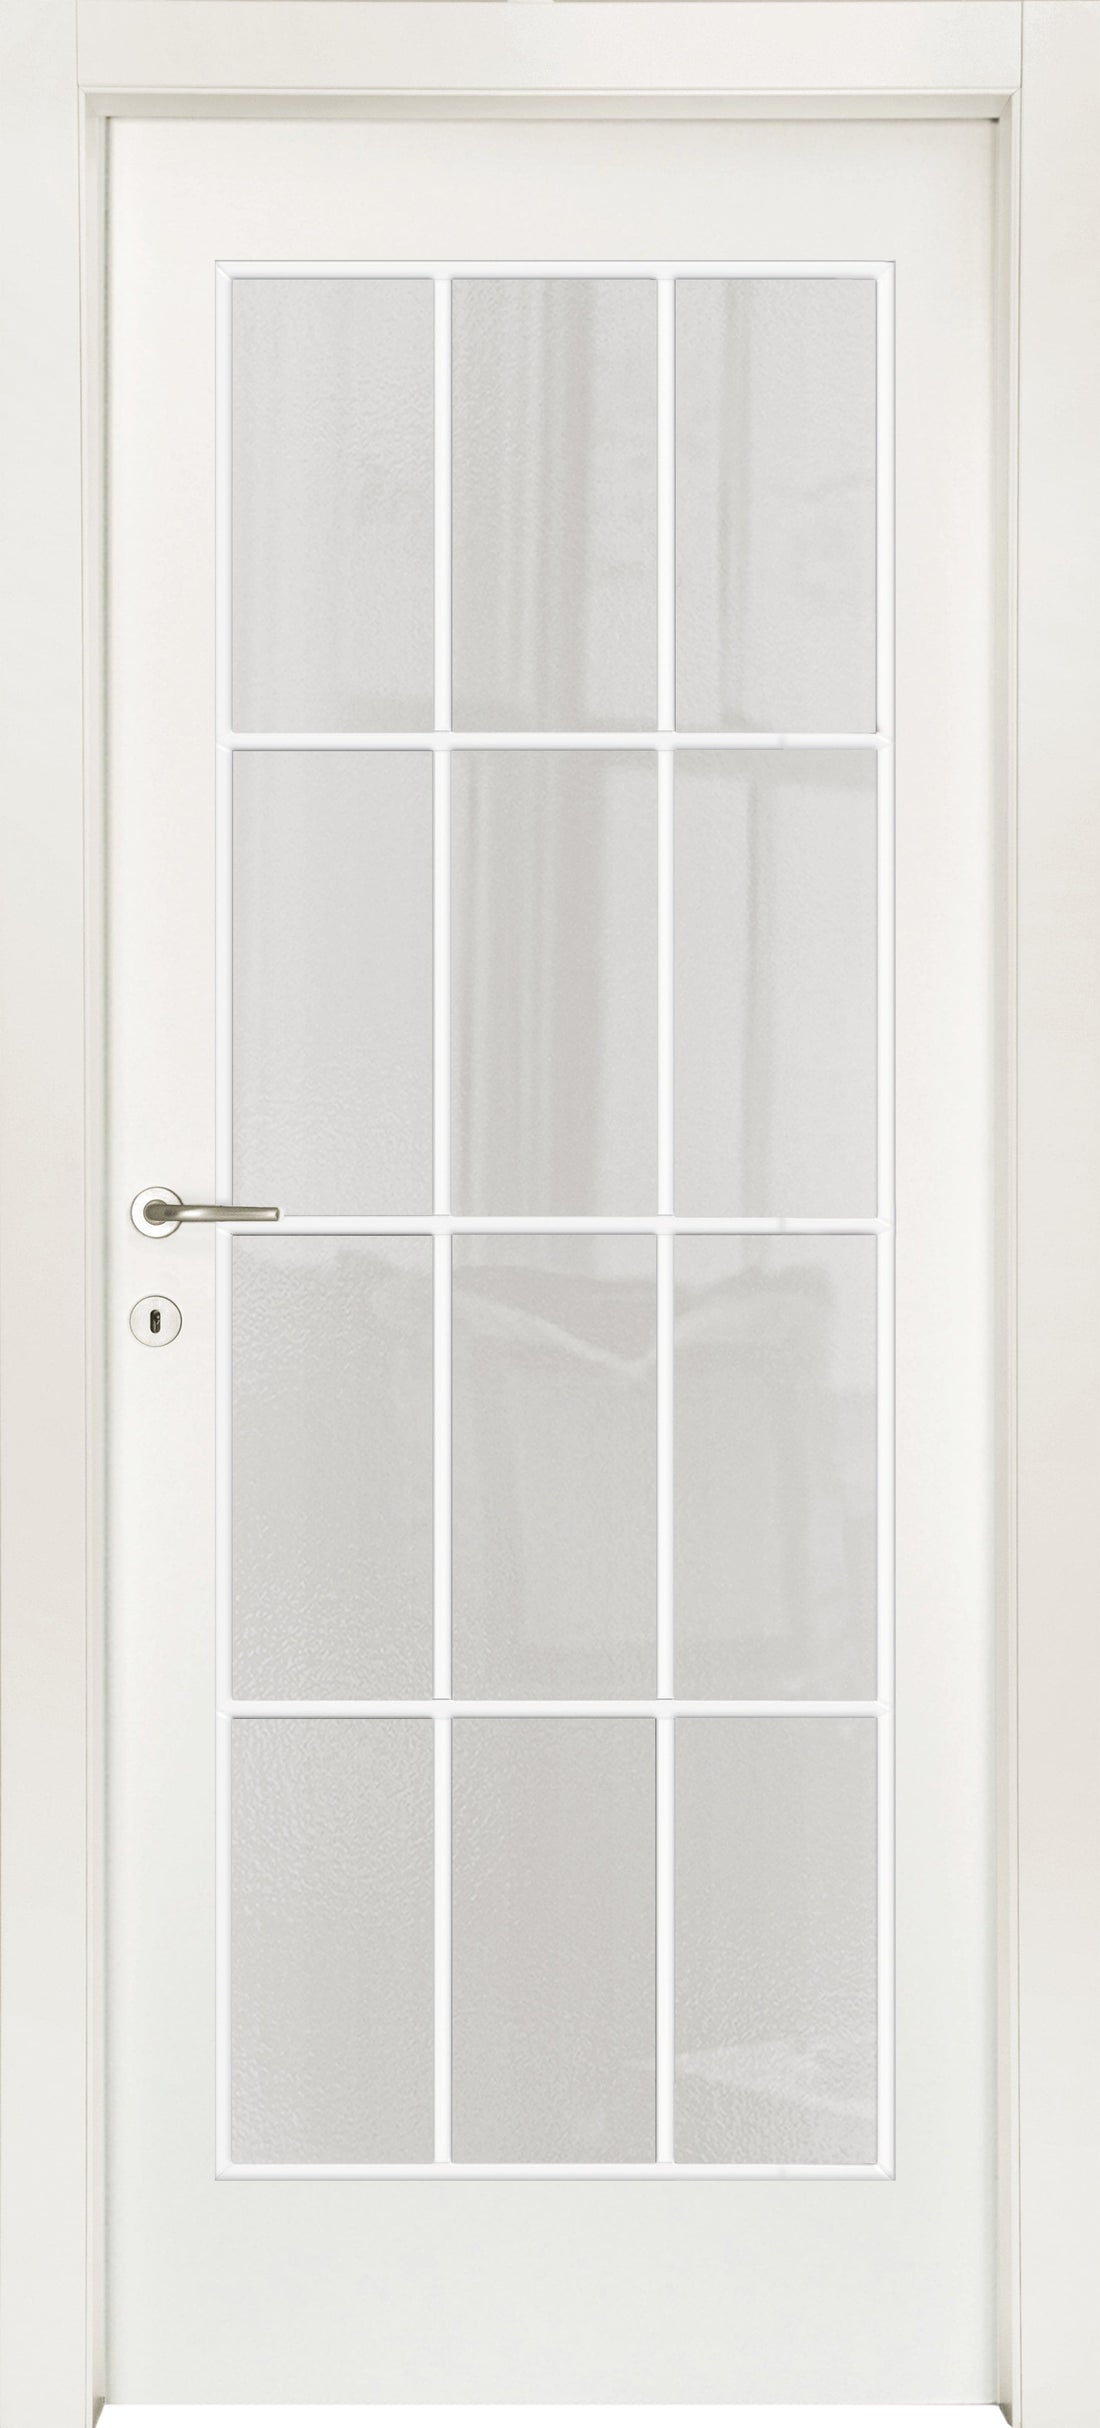 STRAUSS DOOR 60 X 210 LEFT MILK GLASS WITH WHITE MUNTIN BAR - best price from Maltashopper.com BR450002392